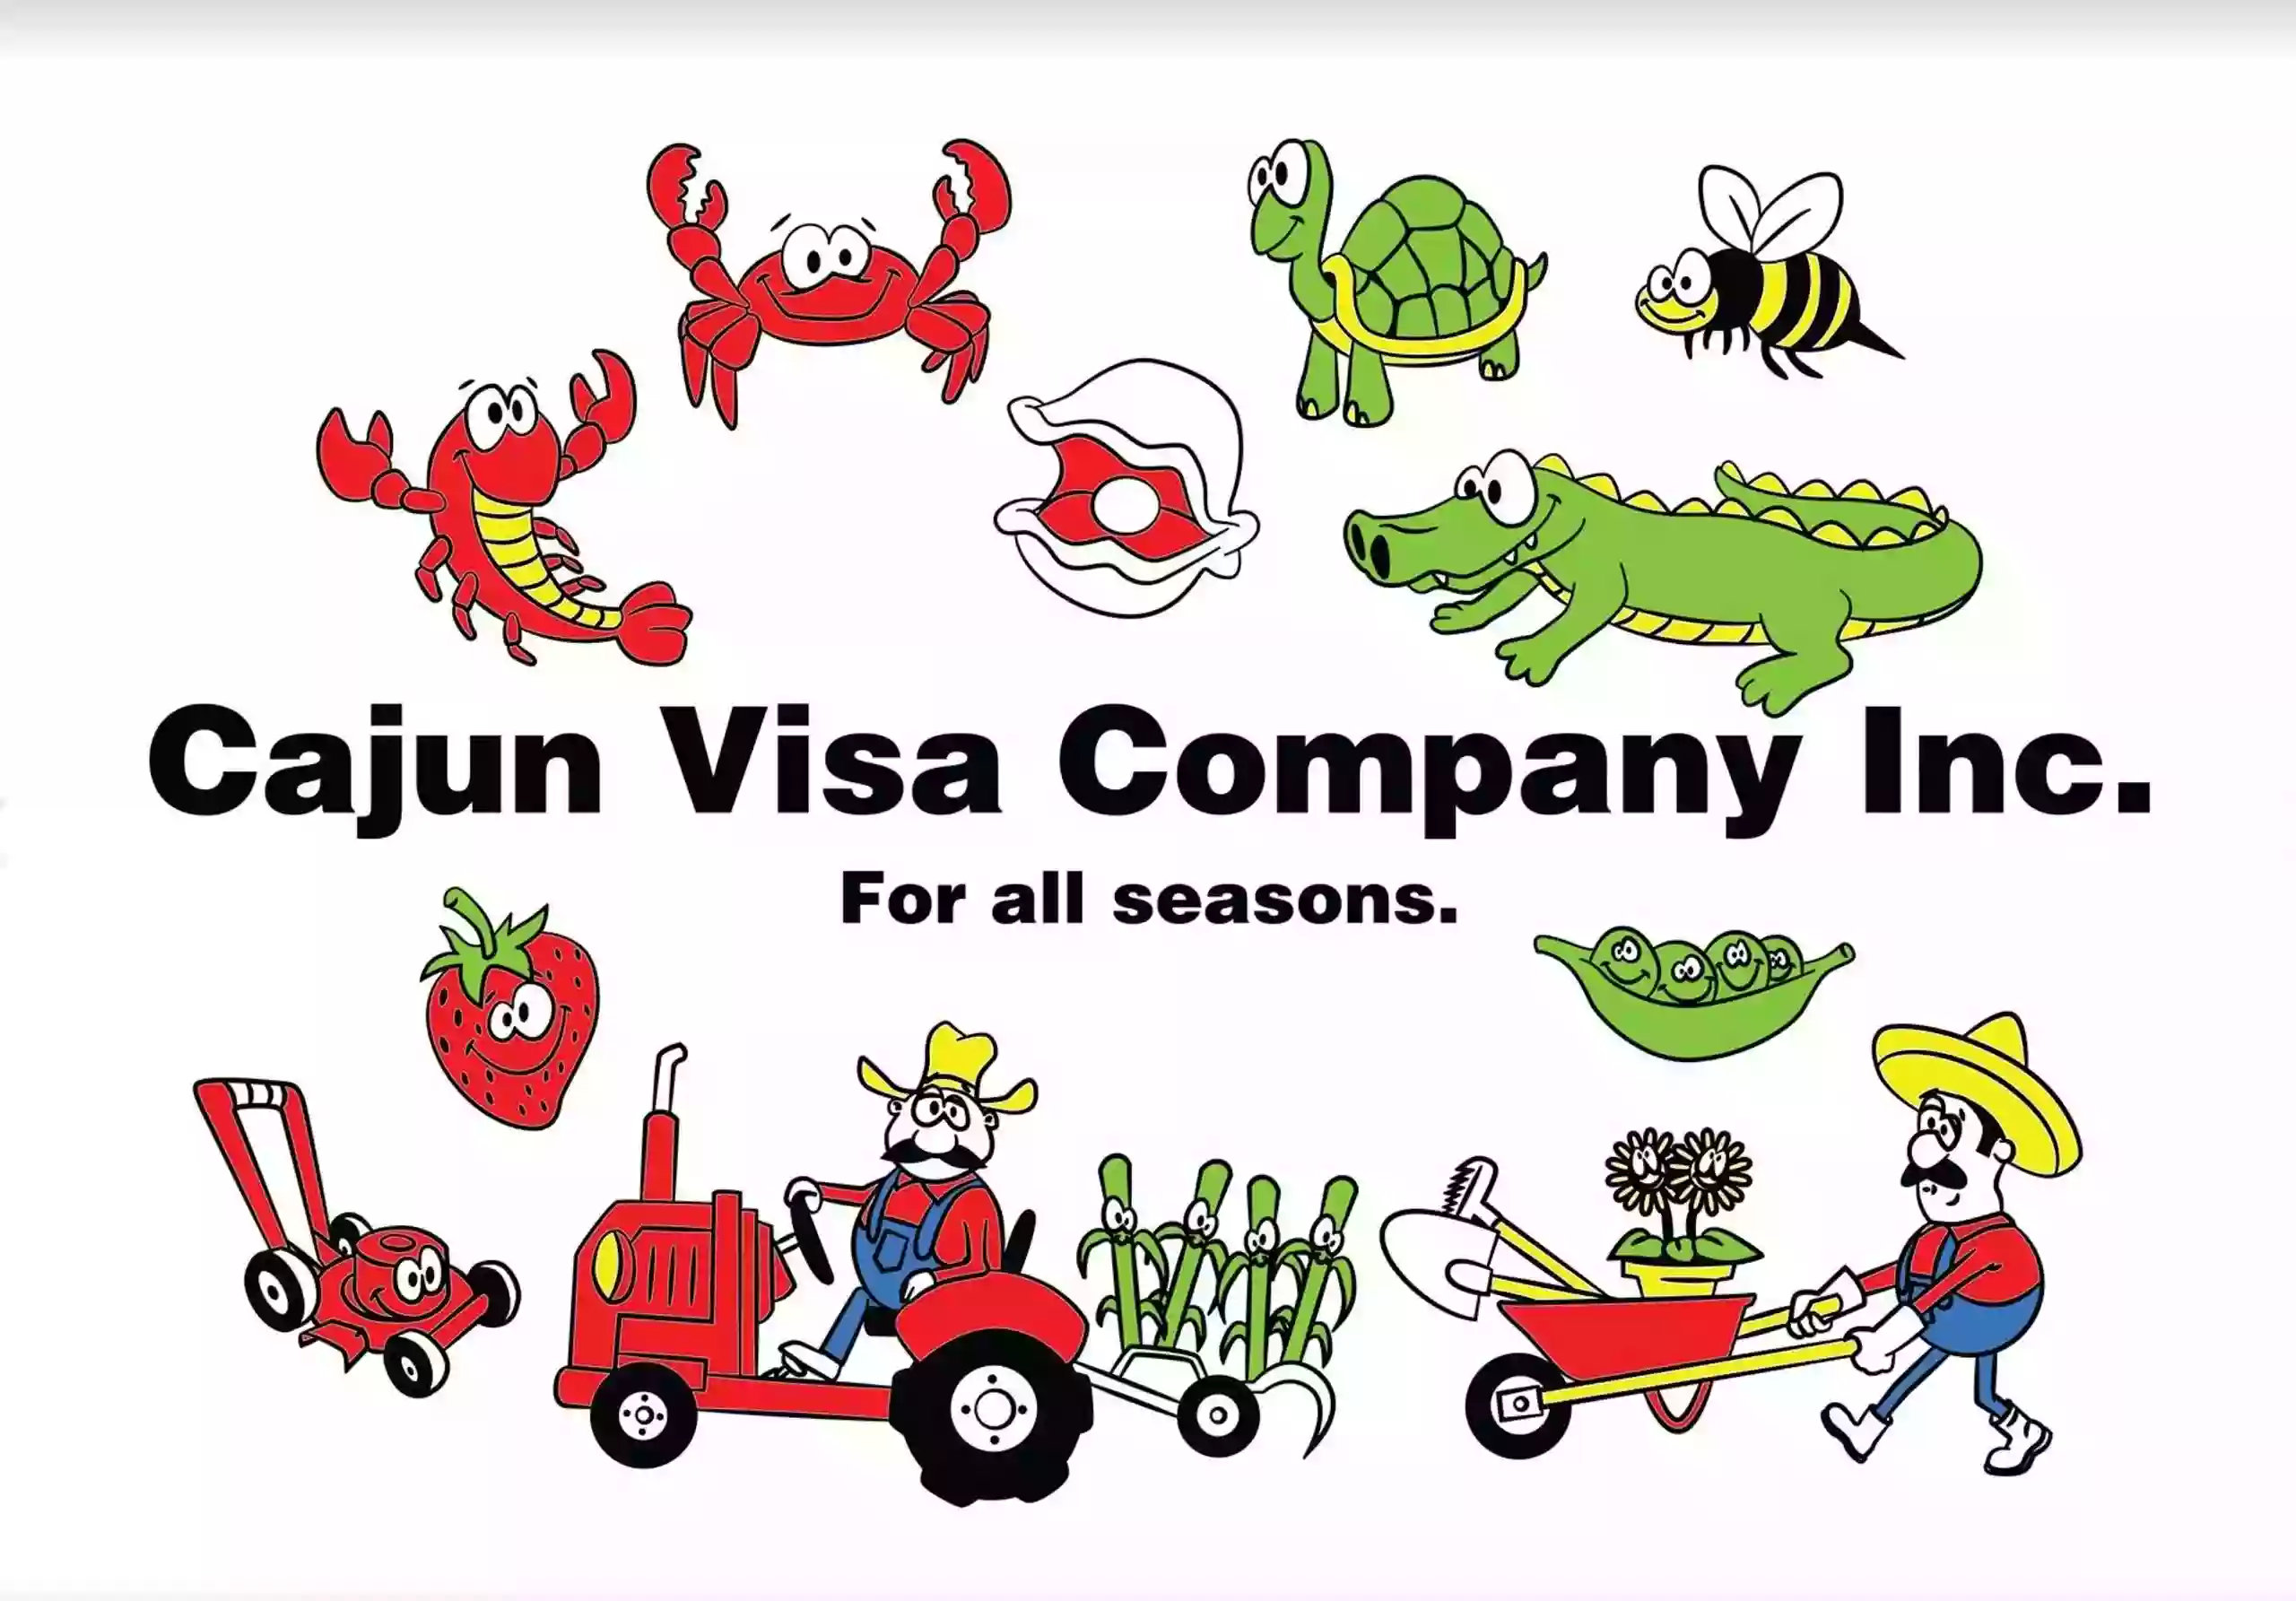 Cajun Visa Company Inc